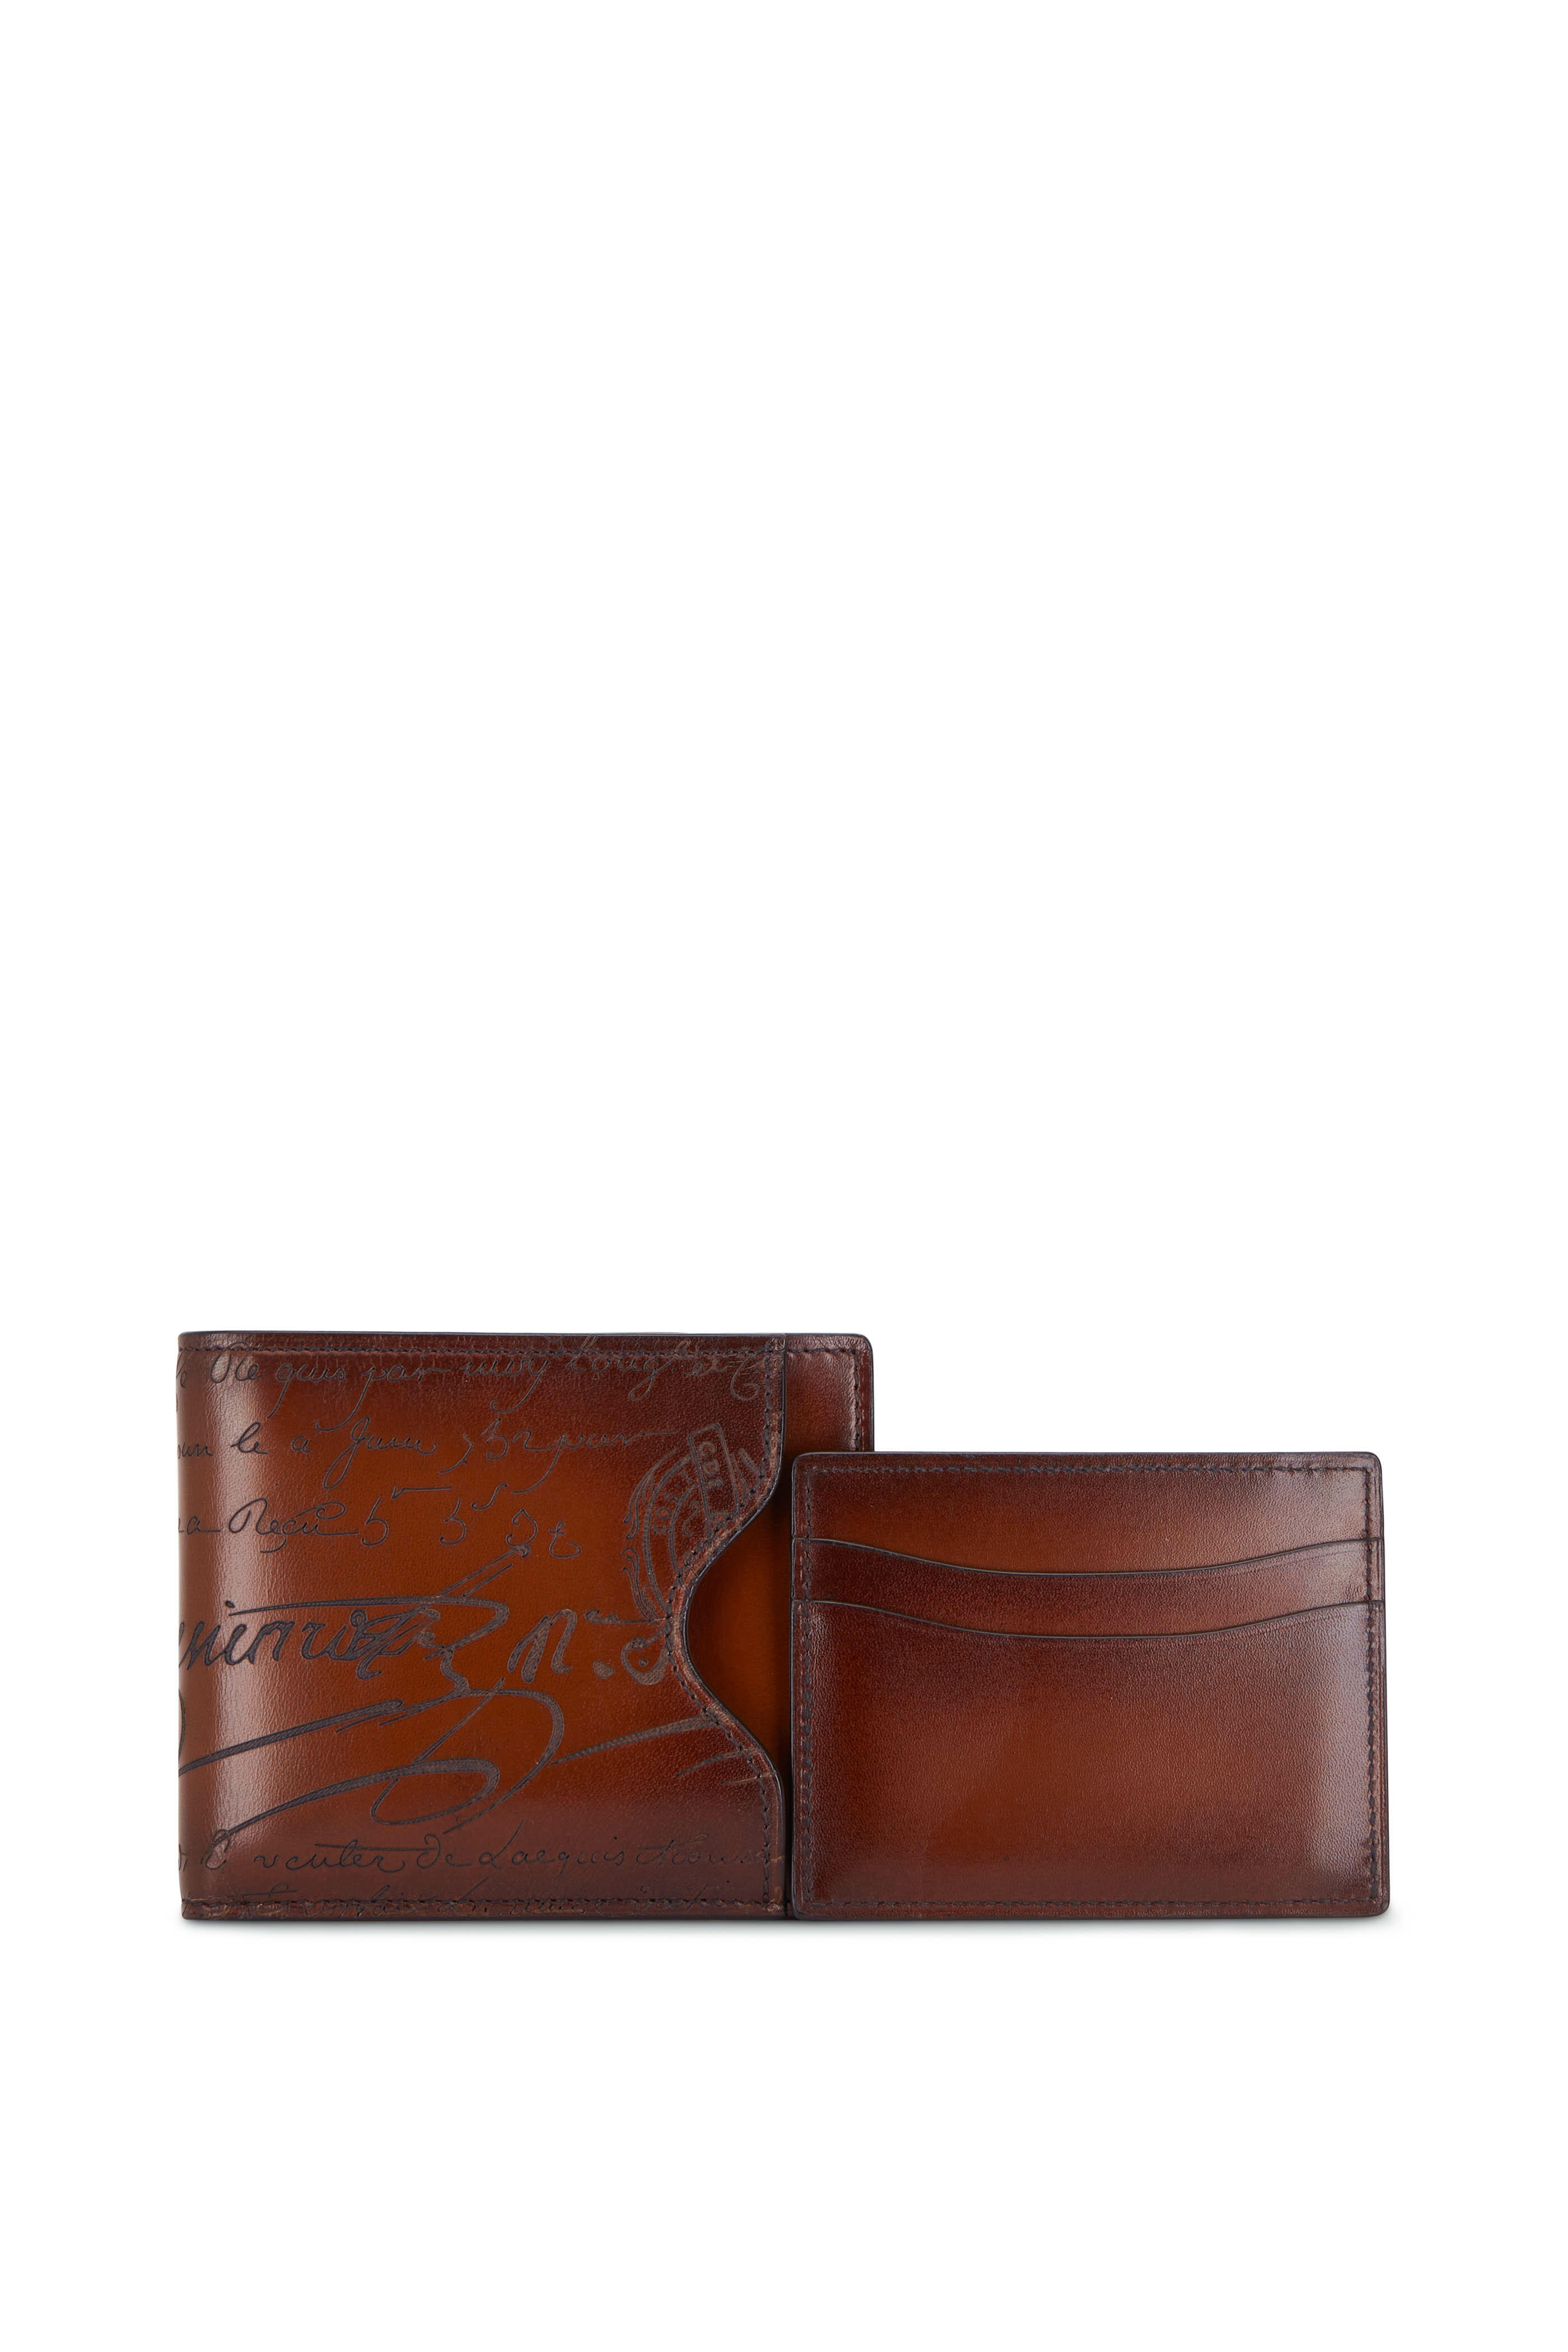 Berluti - Makore Steel Blue Leather Wallet